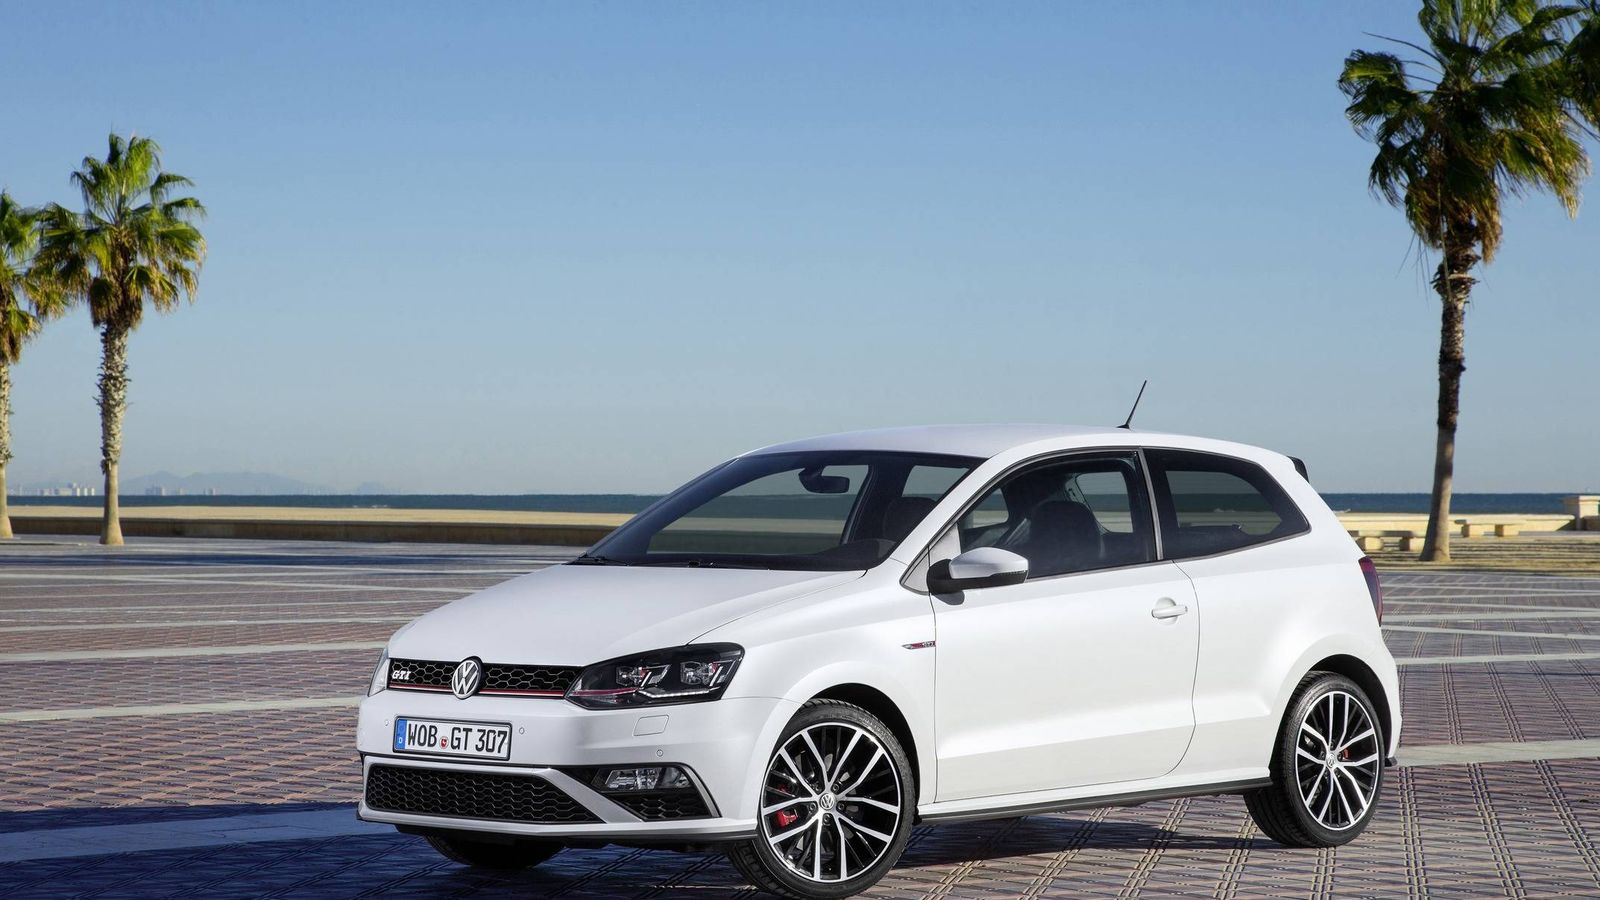 Foto: El Volkswagen Polo fabricado en España fue el más vendido en marzo.